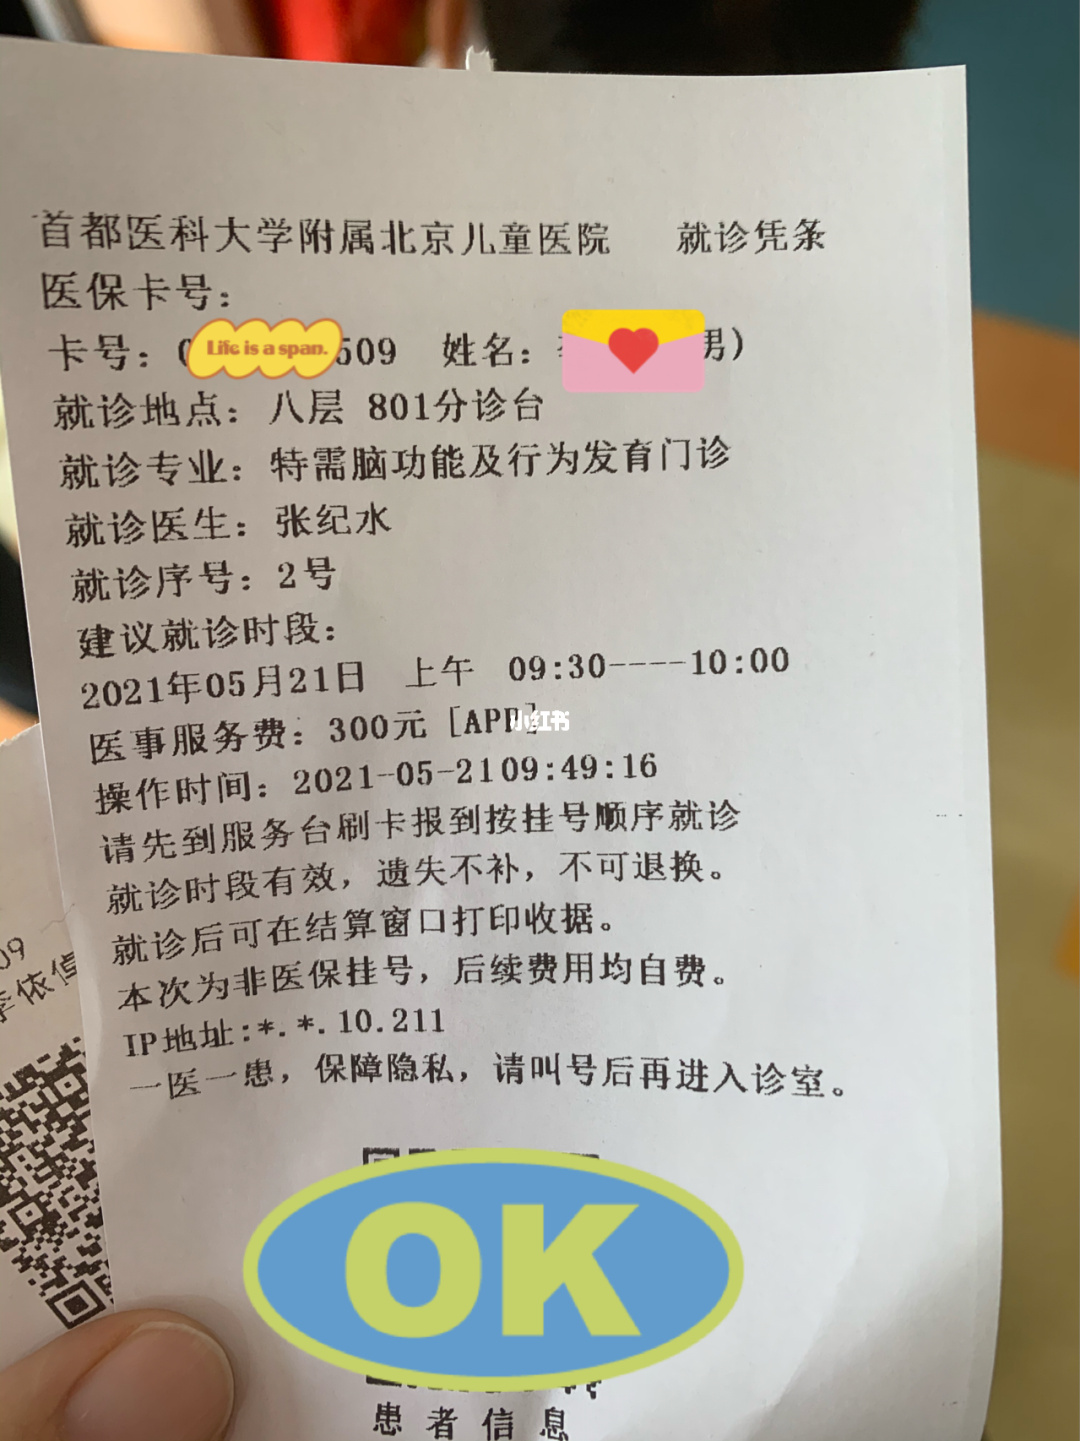 包含北京中医医院靠谱黄牛确实能挂到号!的词条